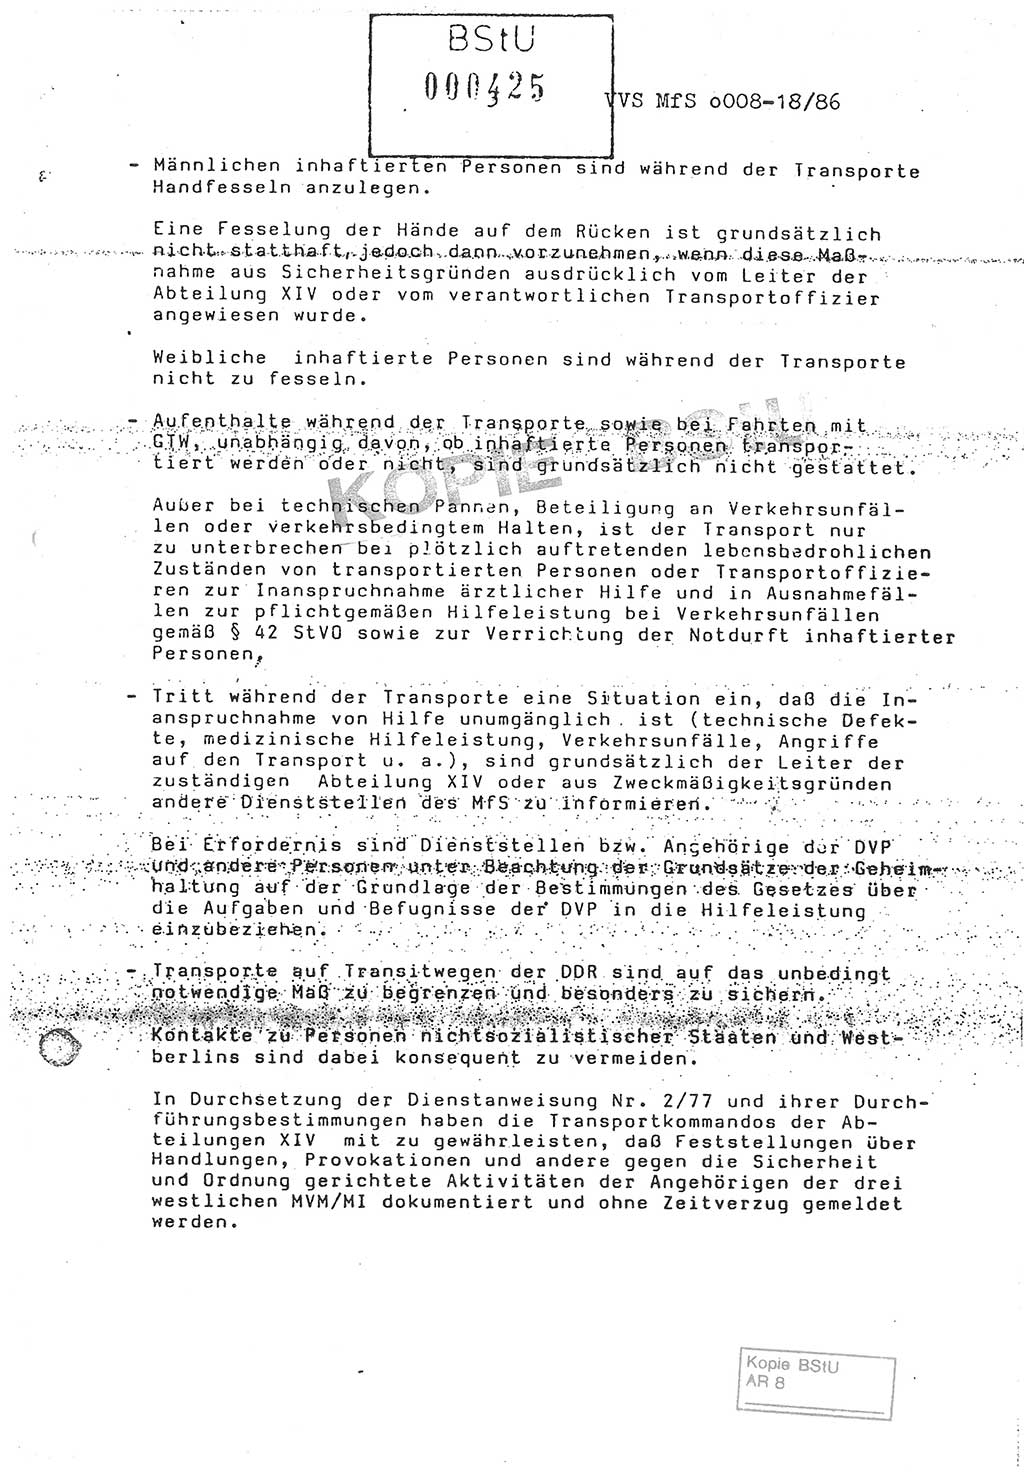 Anweisung Nr. 4/86 zur Sicherung der Transporte Inhaftierter durch Angehörige der Abteilungen ⅩⅣ, Transportsicherungsanweisung, Ministerium für Staatssicherheit (MfS) [Deutsche Demokratische Republik (DDR)], Abteilung ⅩⅣ, Leiter, Vertrauliche Verschlußsache (VVS) o008-18/86, Berlin, 29.1.1986, Seite 3 (Anw. 4/86 MfS DDR Abt. ⅩⅣ Ltr. VVS o008-18/86 1986, S. 3)